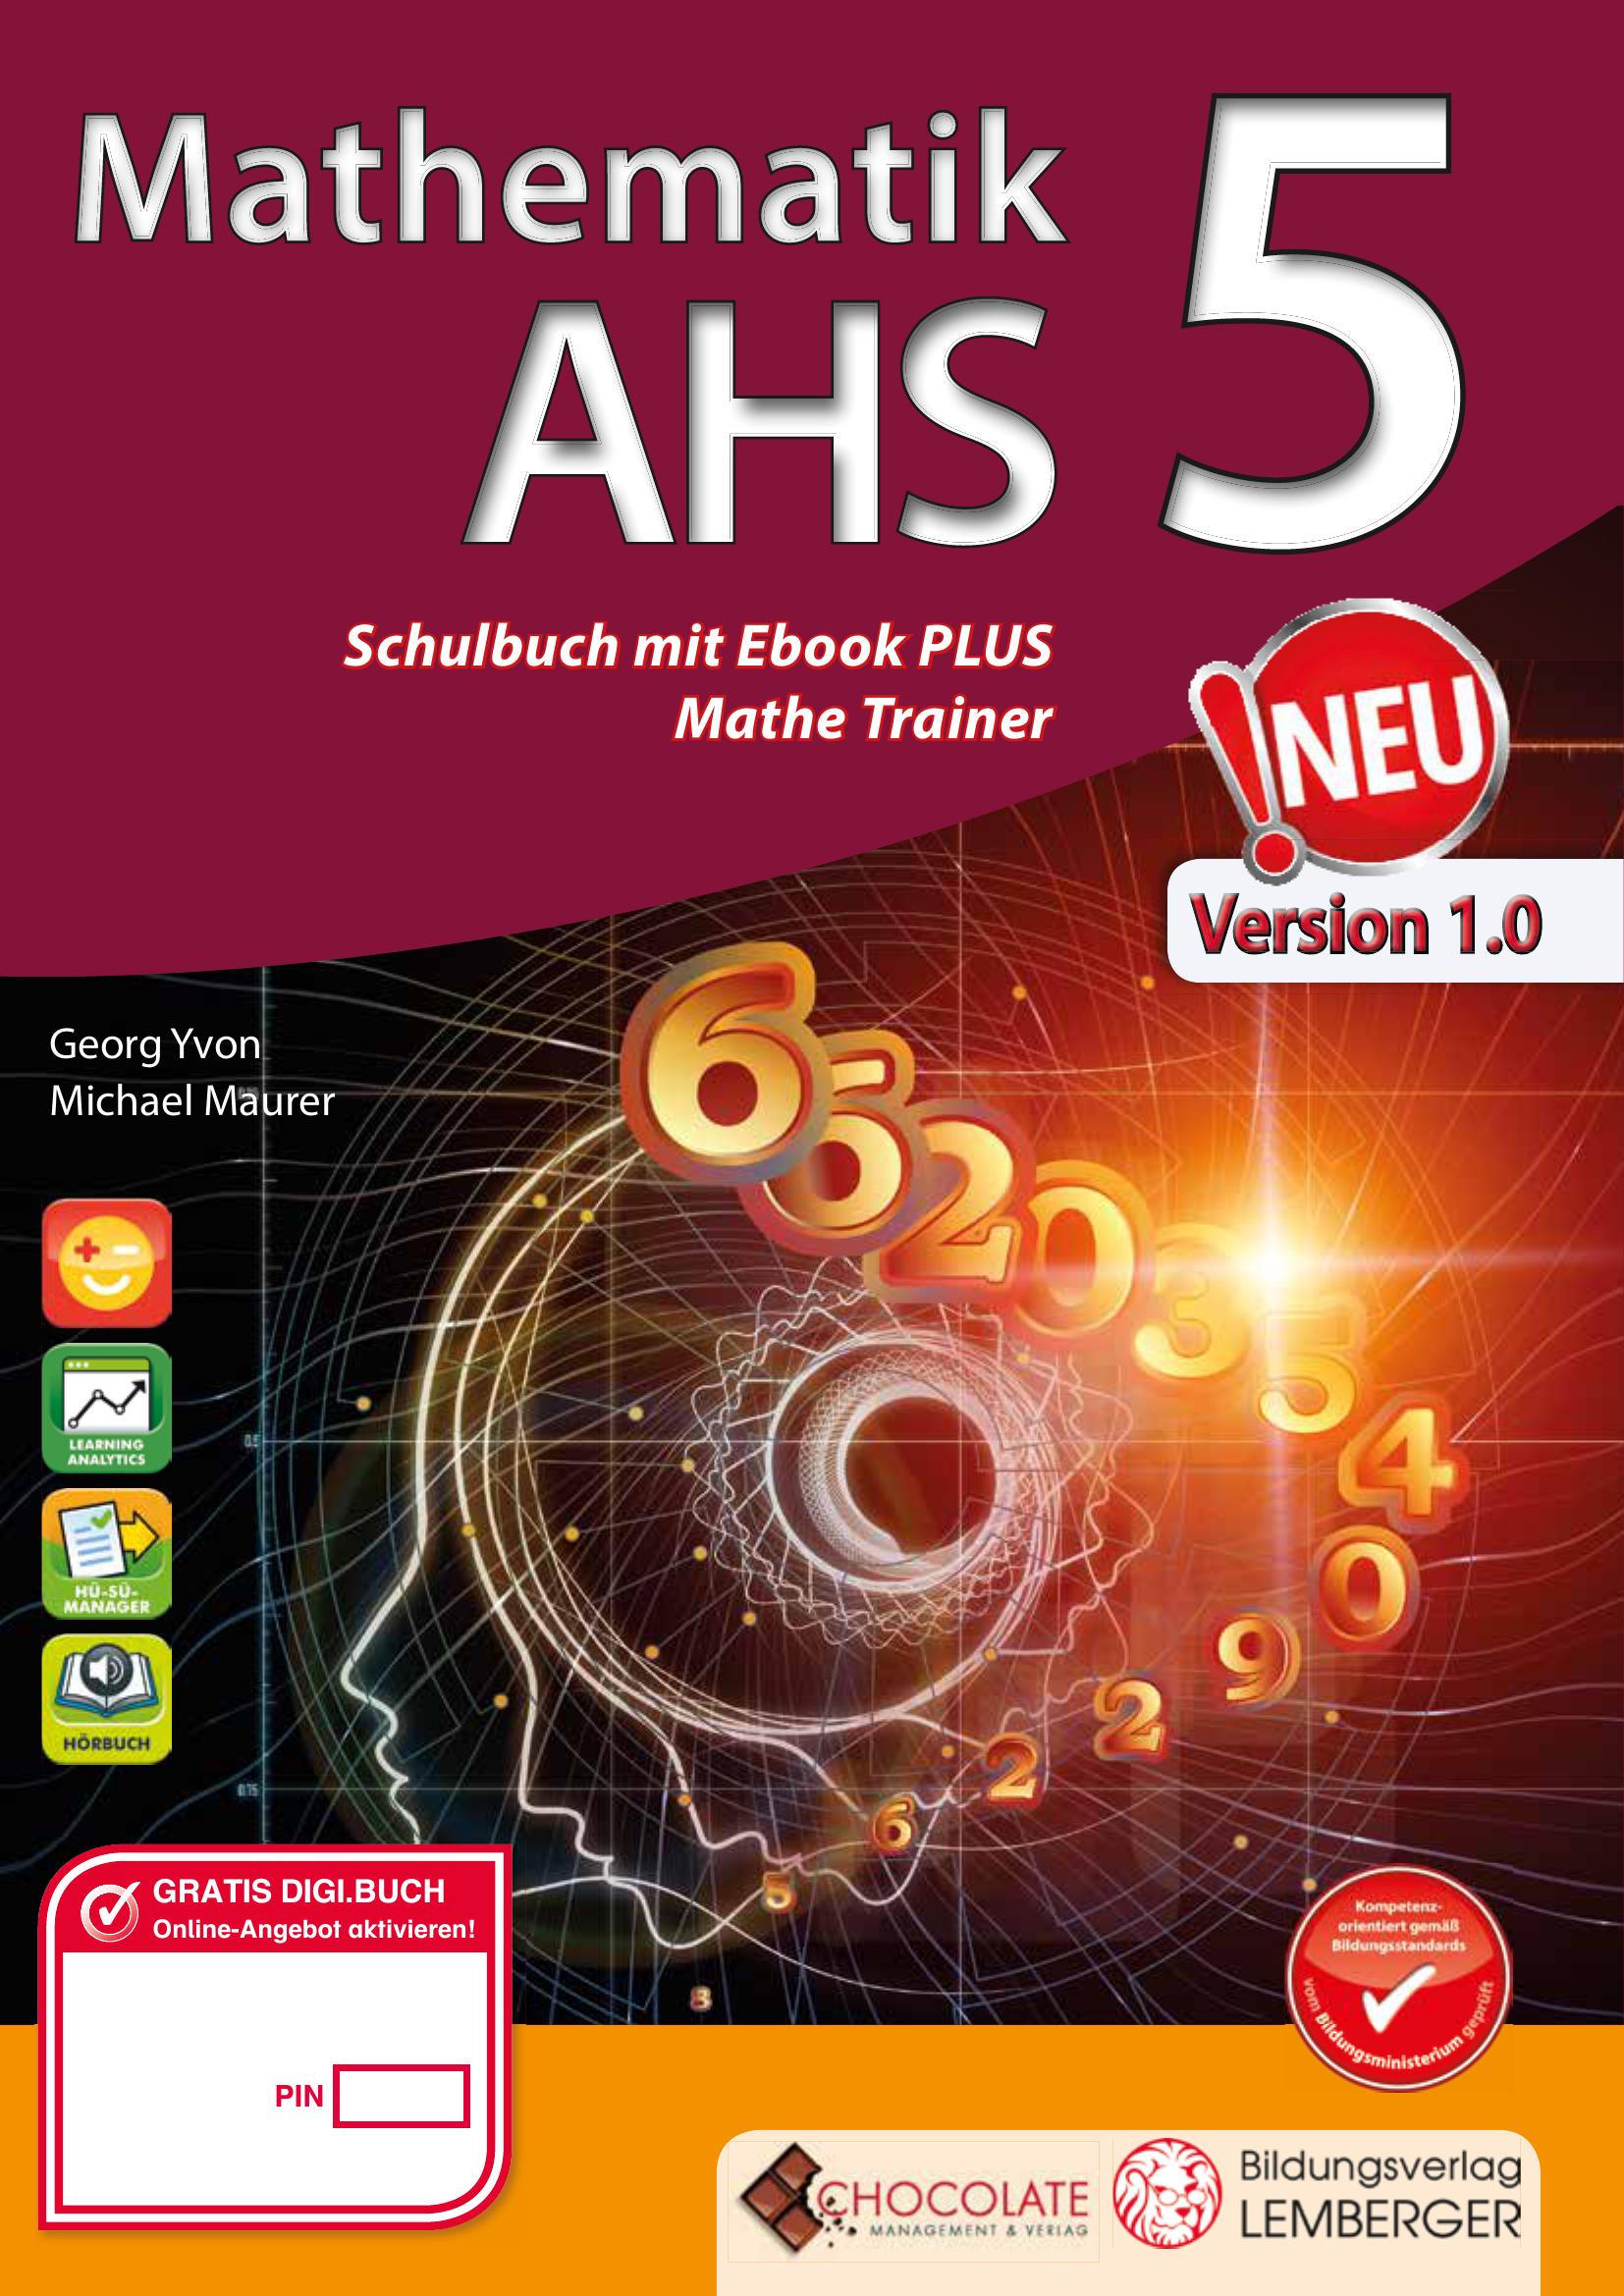 Mathematik AHS 5 PLUS-Lizenz mit Genial! Mathe-Trainer